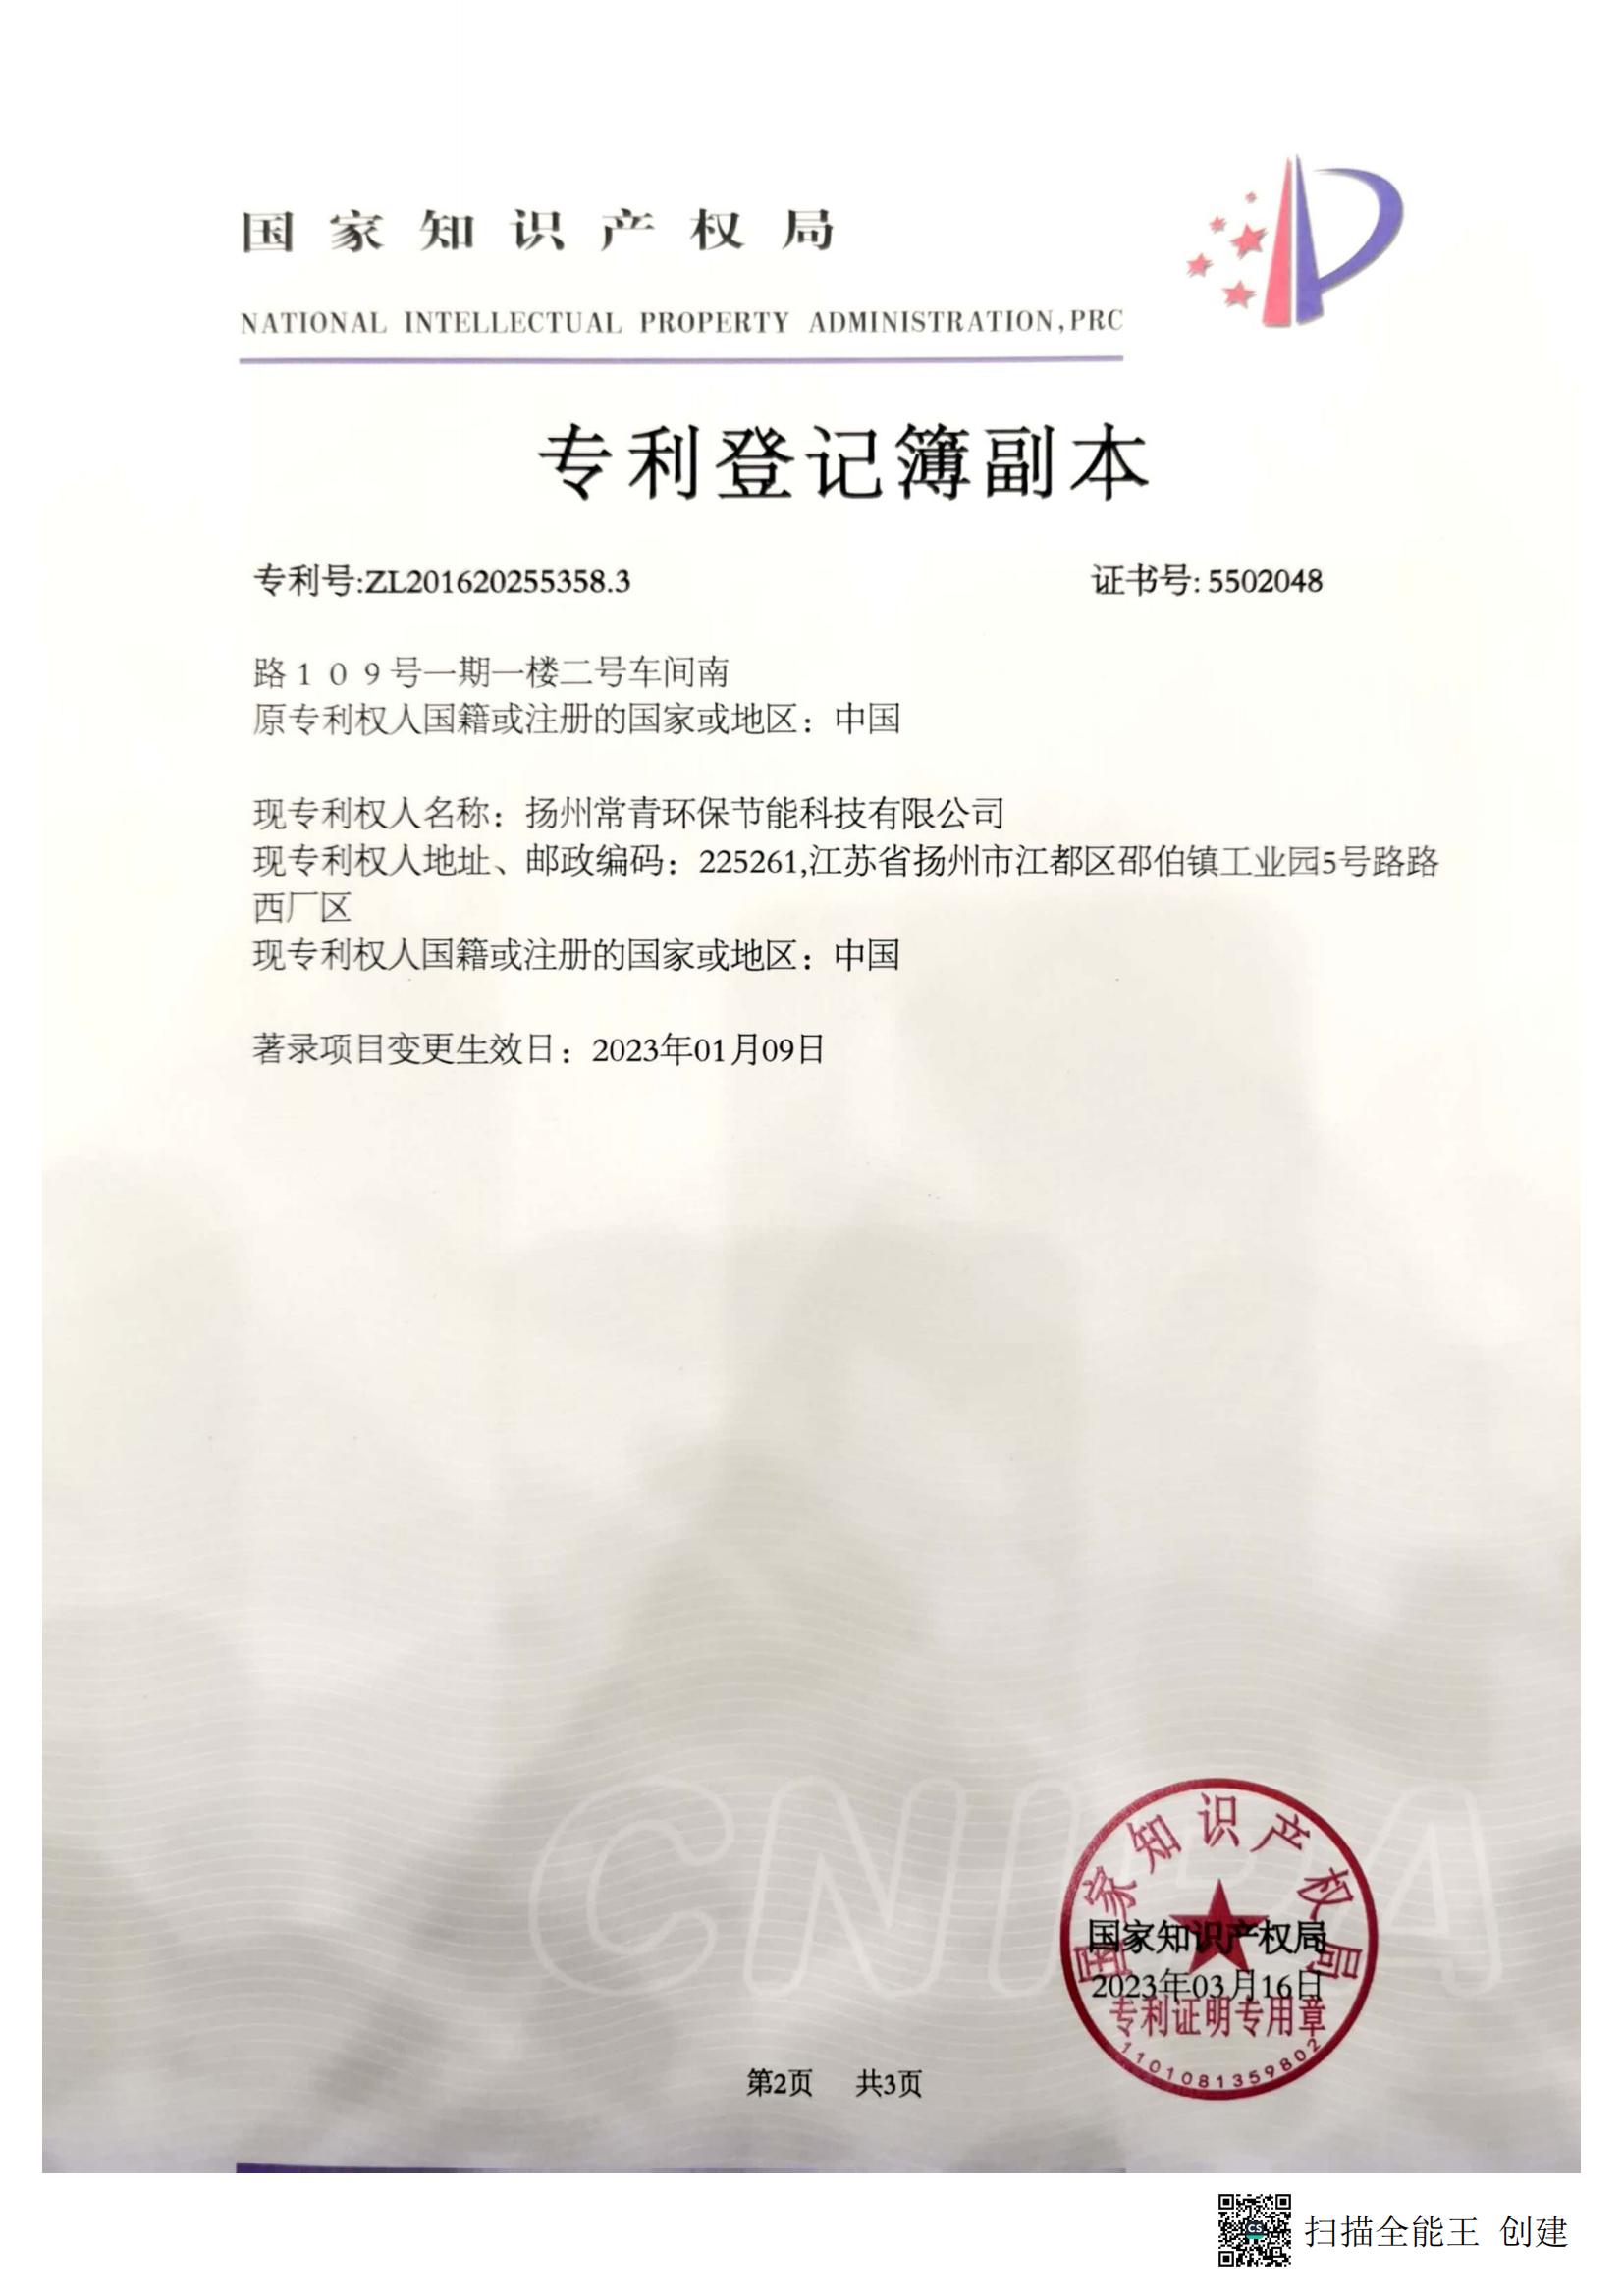 扬州常青环保节能科技有限公司-2016202553583-专利登记簿副本_01